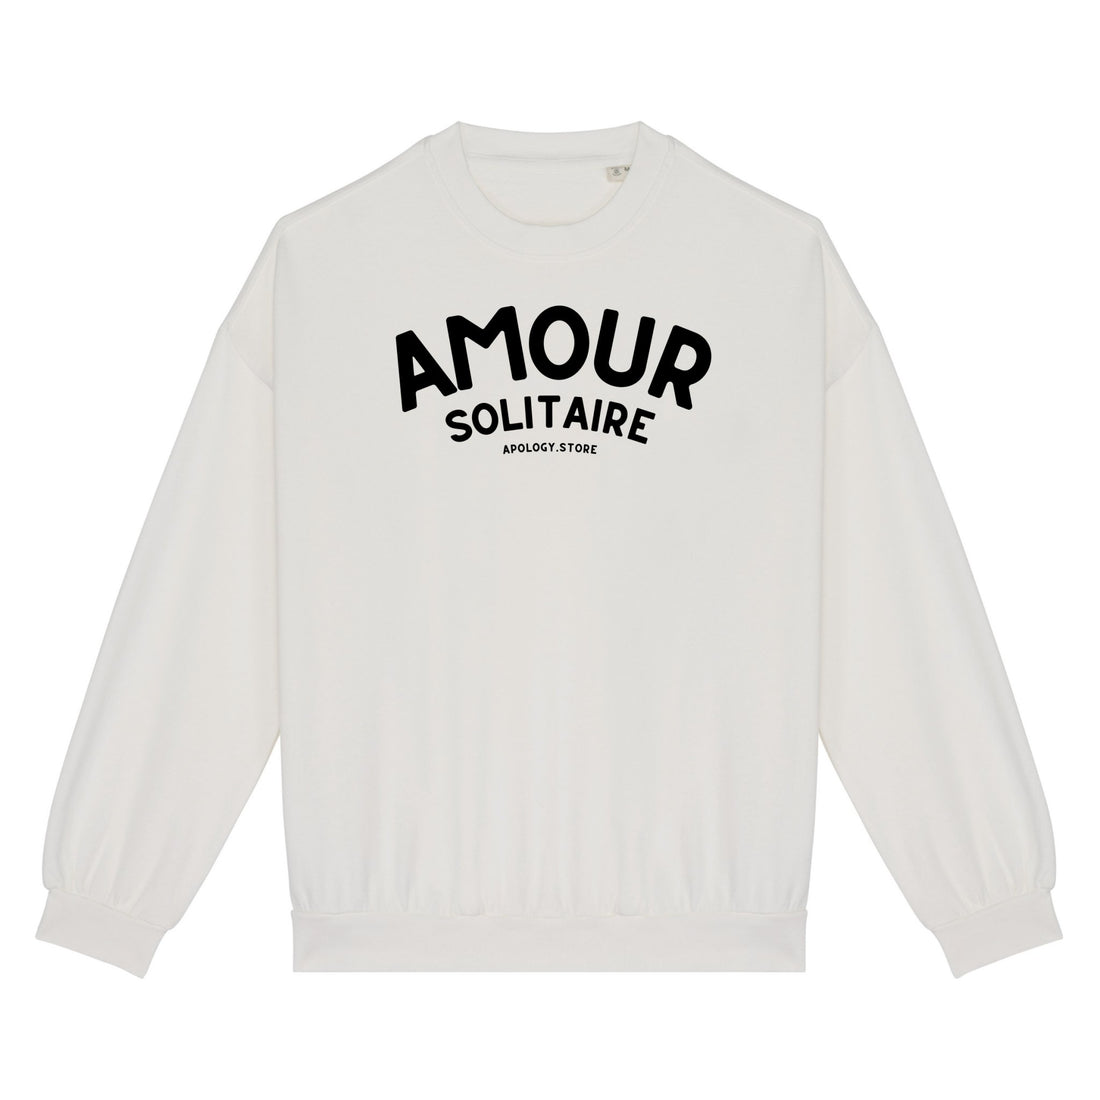 Sweat-shirt Amour Solitaire - Fabriqué au Portugal XS Ivoire - Imprimé en France